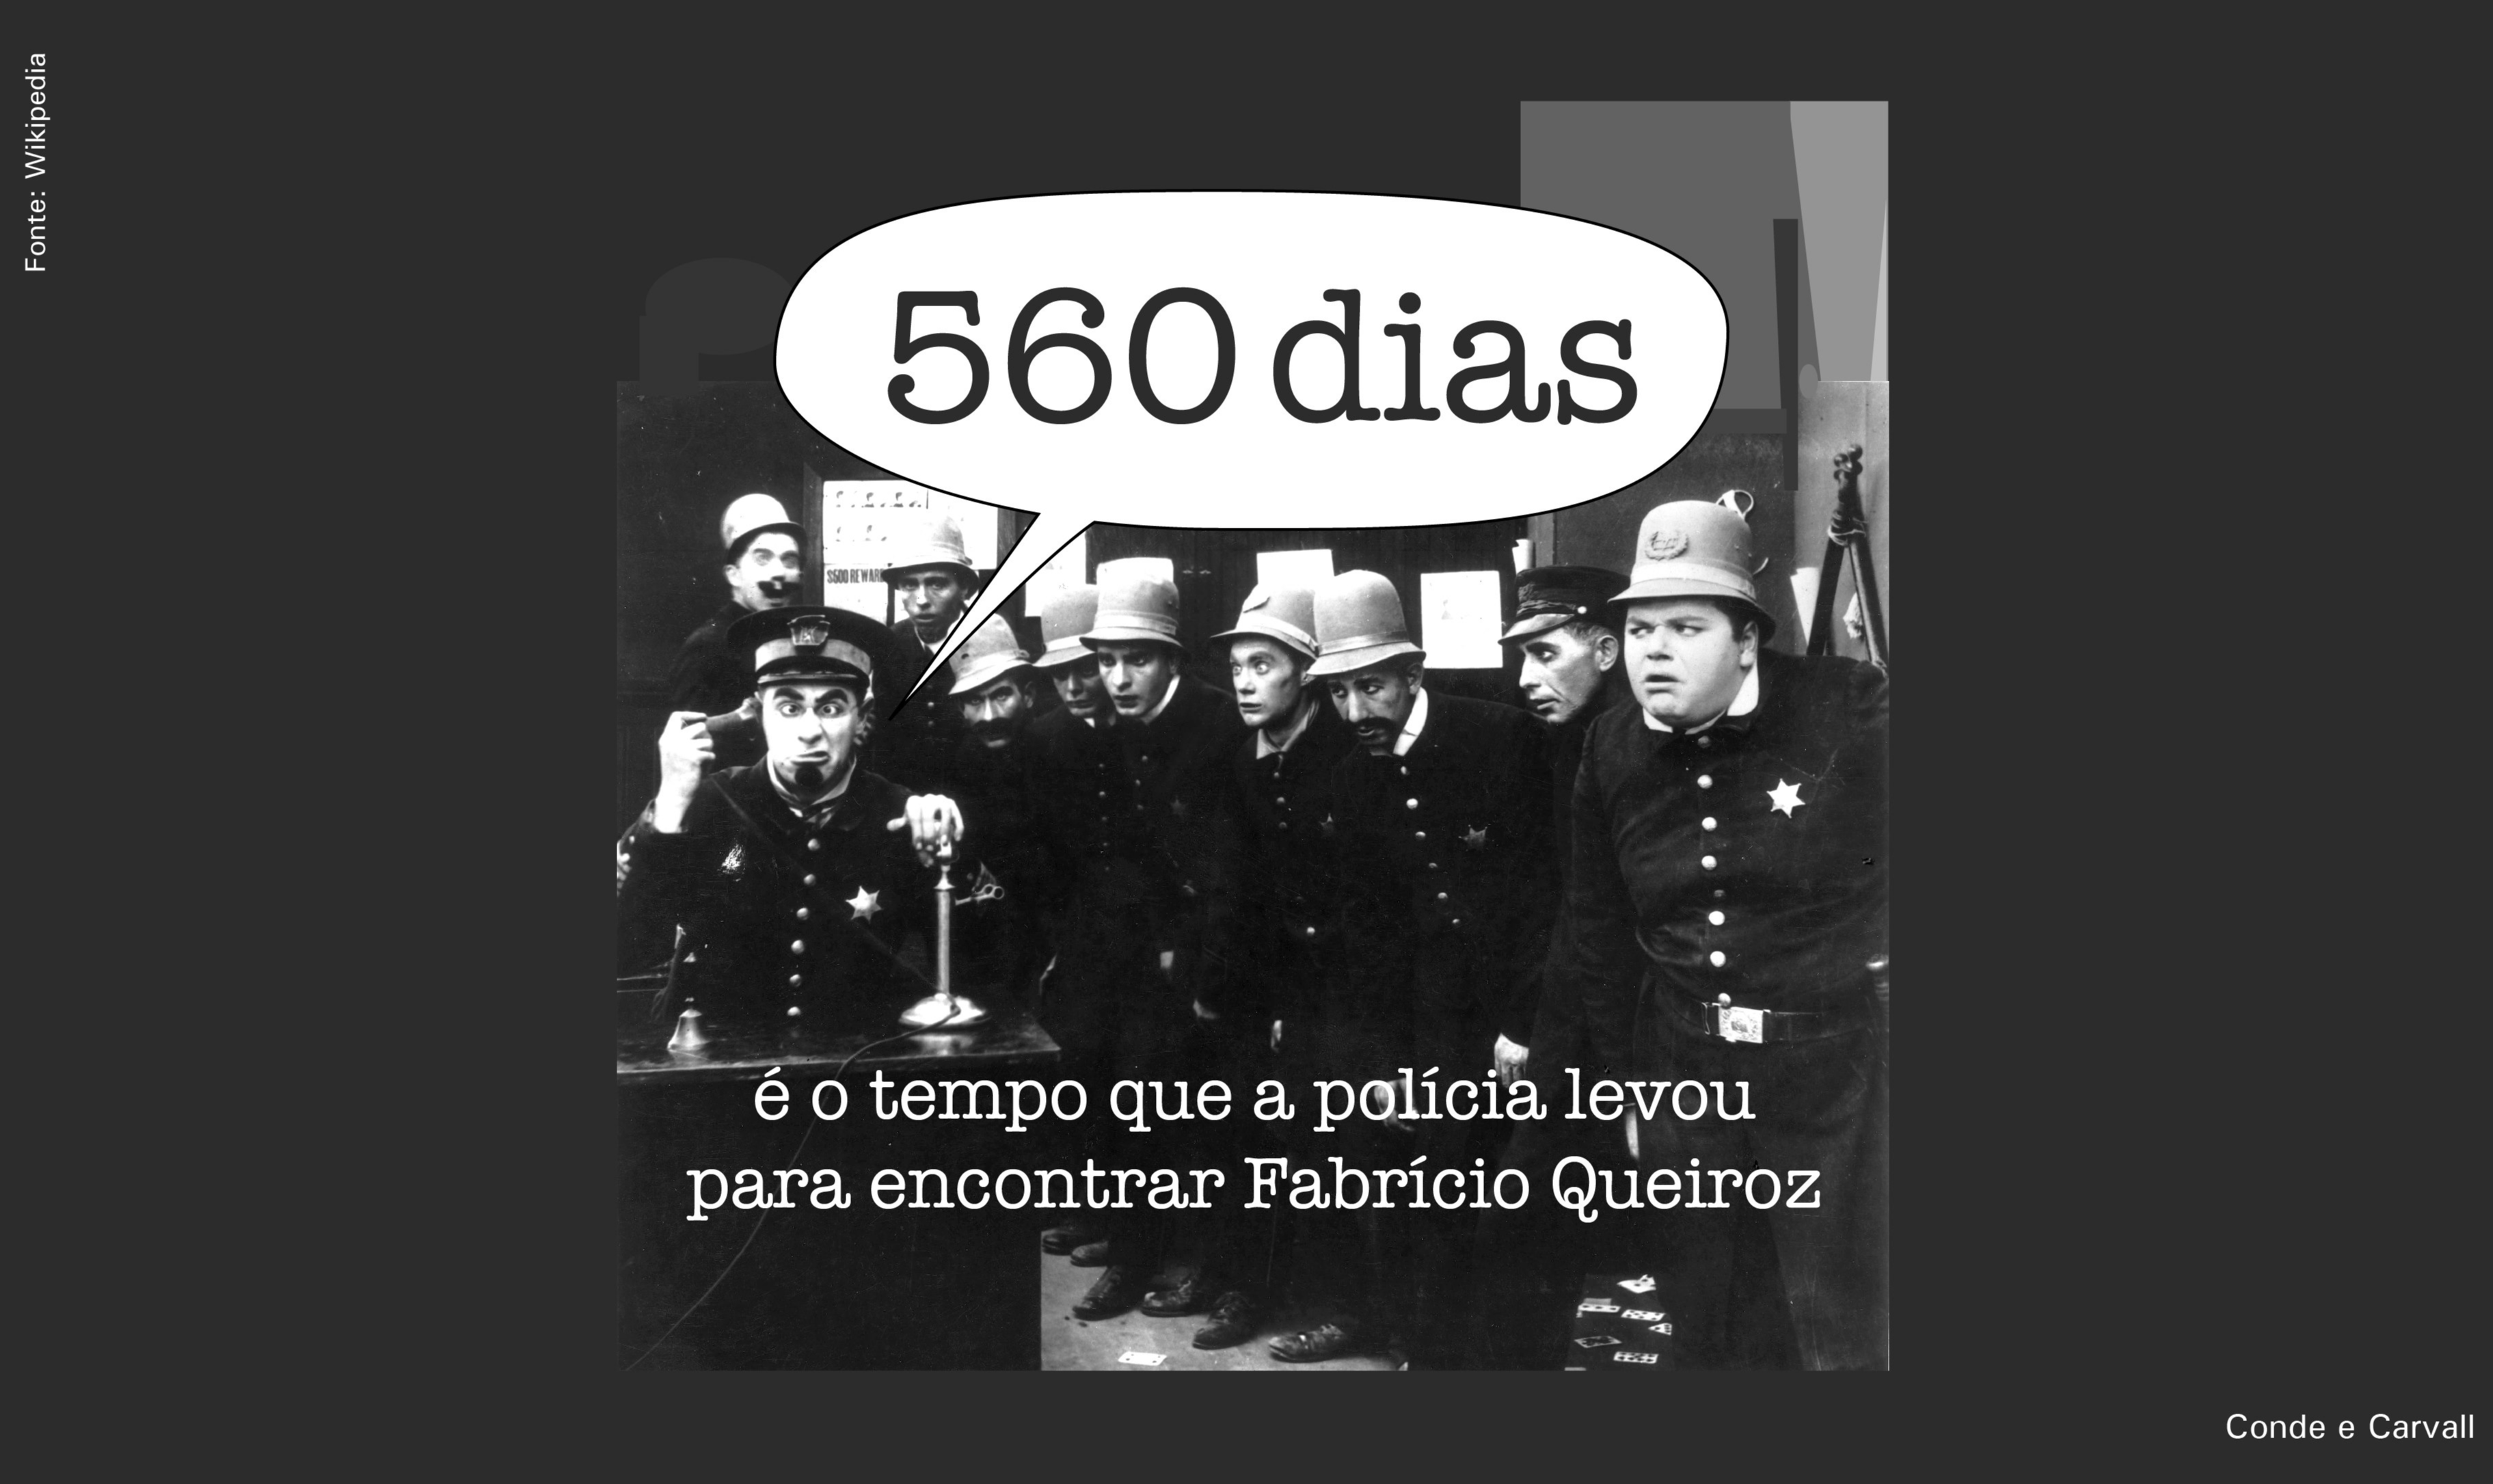 560 dias é o tempo que a polícia levou para encontrar Fabrício Queiroz